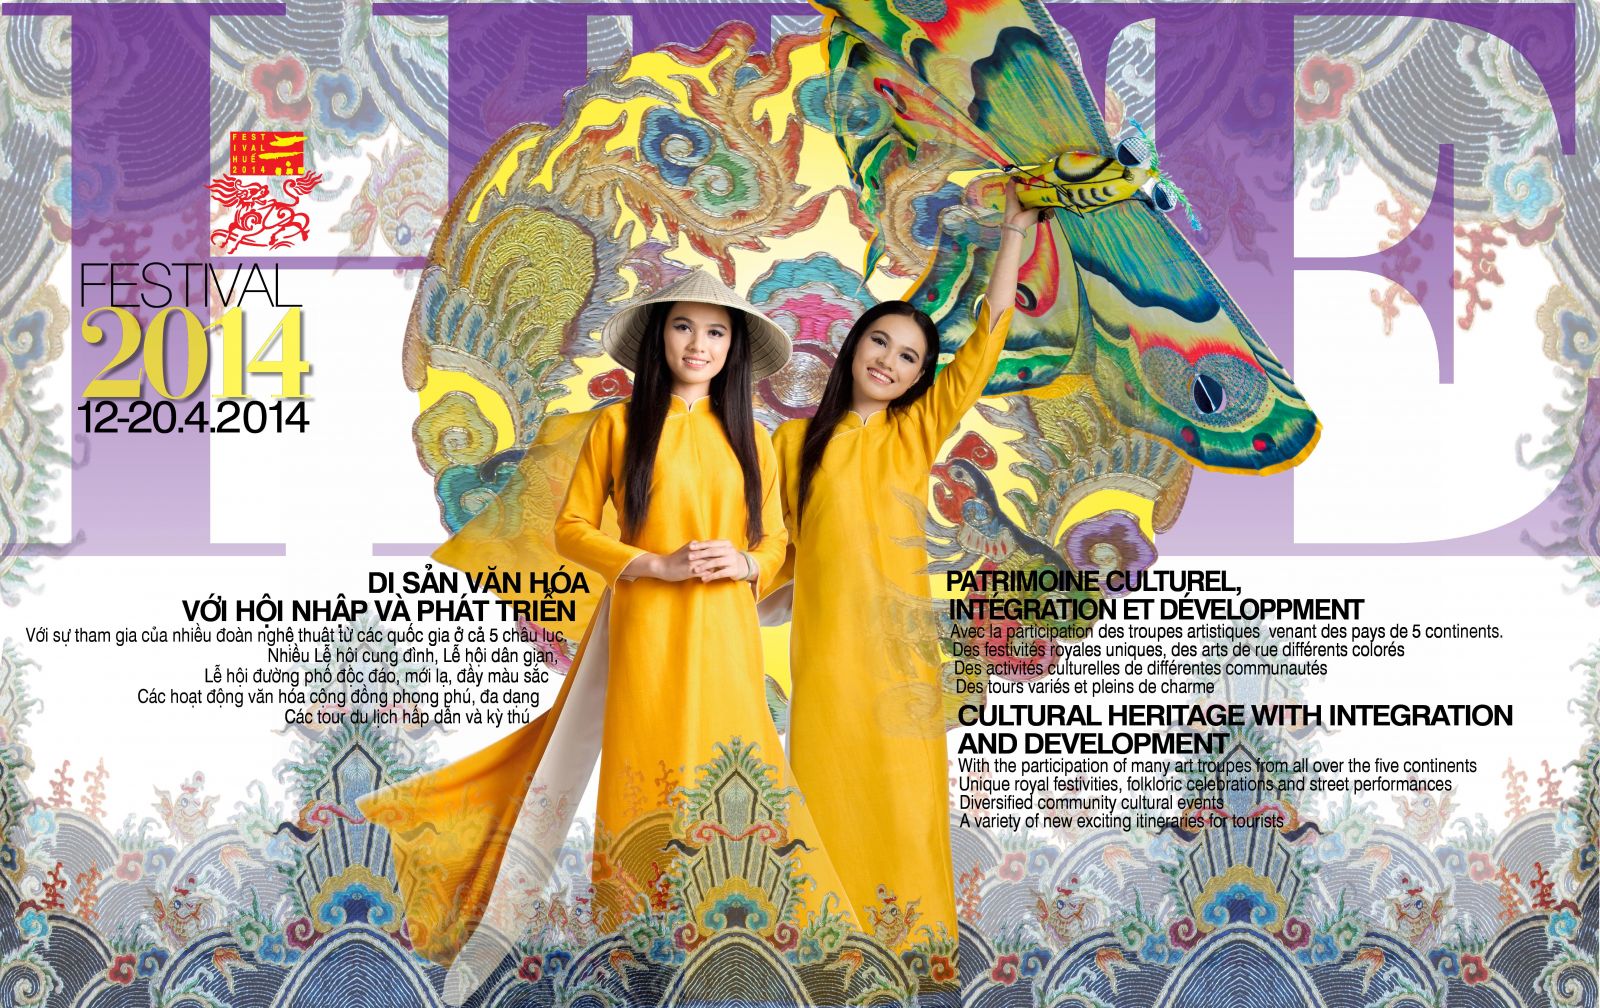 Festival Hue 2014 “Patrimoine culturel, intégration et développement”